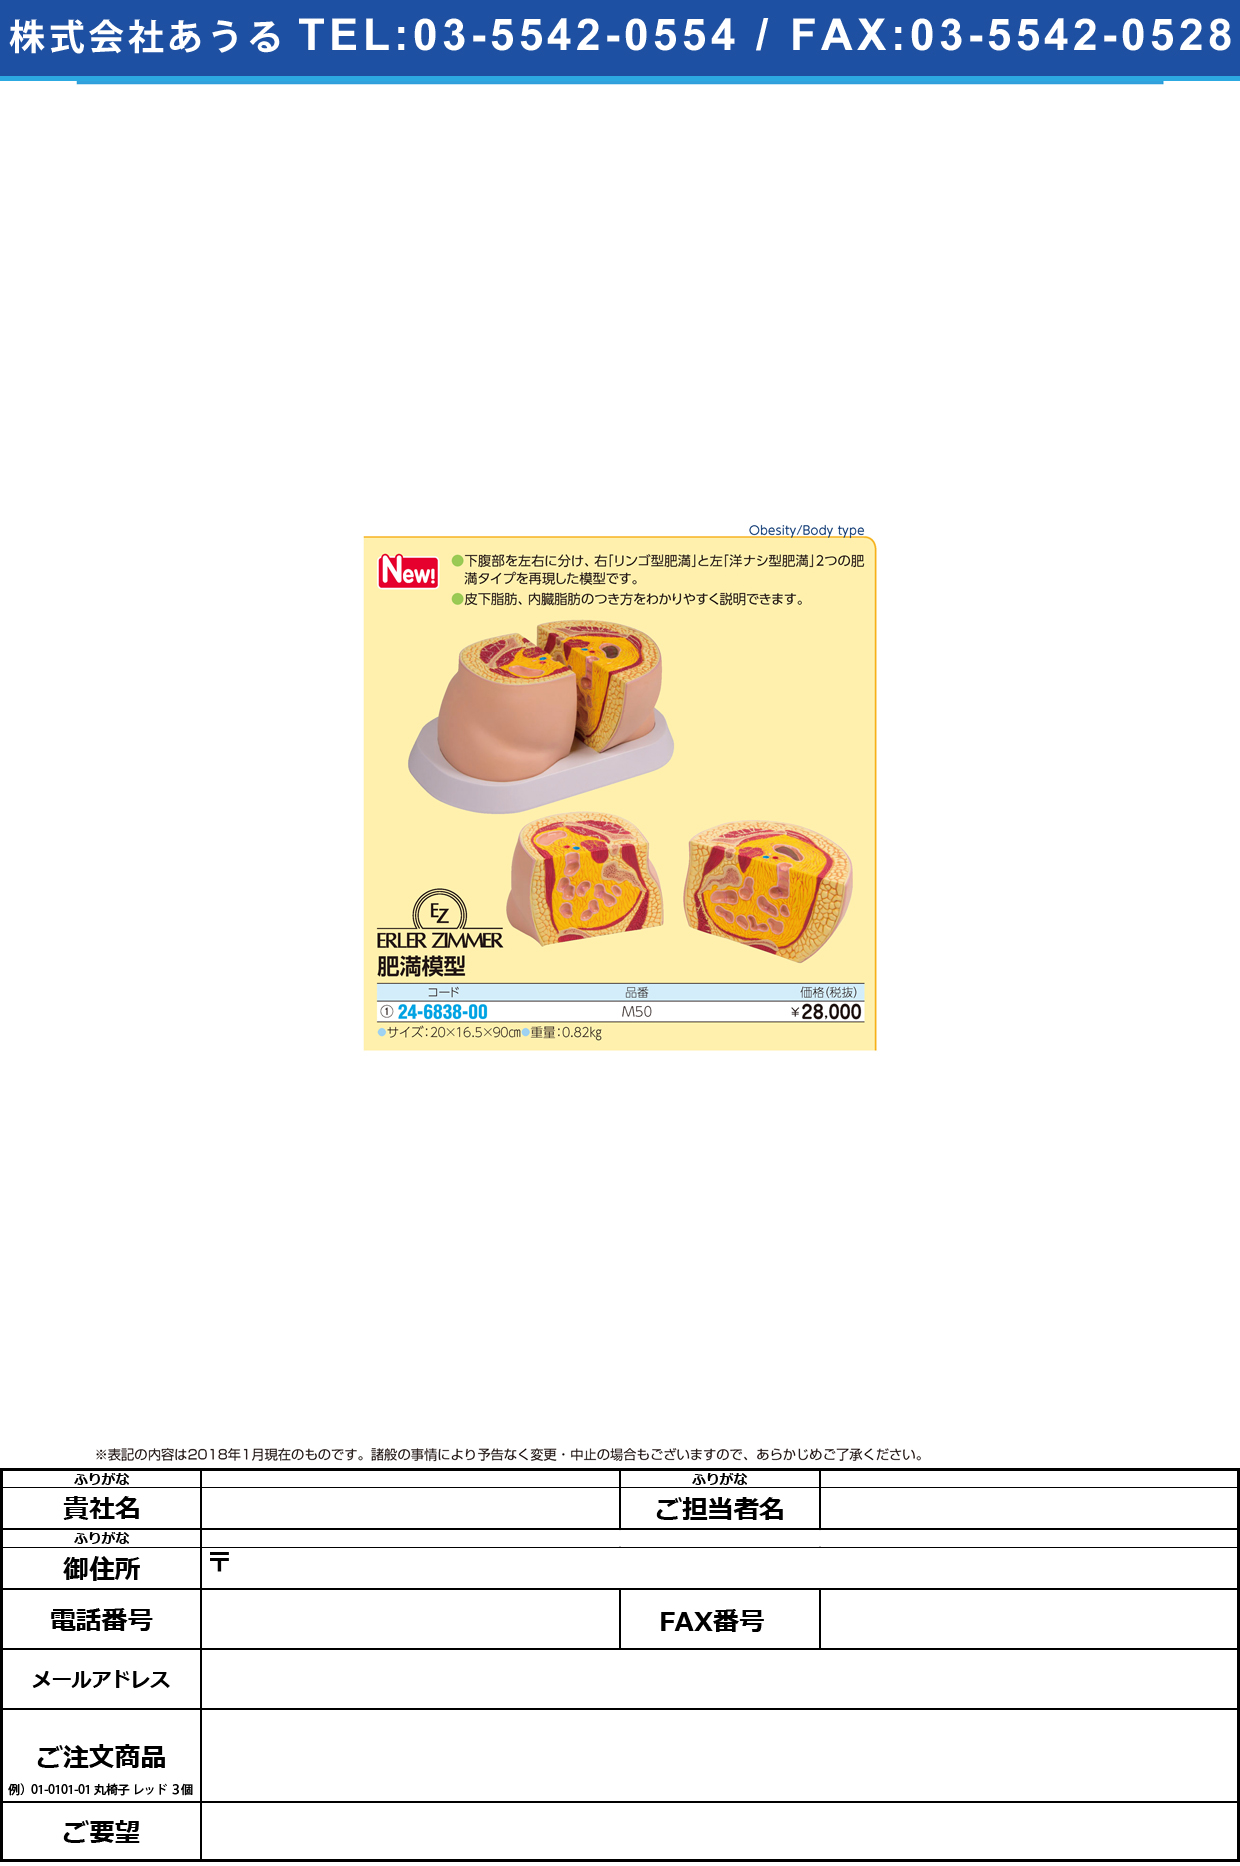 (24-6838-00)肥満模型 M50 ﾋﾏﾝﾓｹｲ(エルラージーマー社)【1個単位】【2019年カタログ商品】